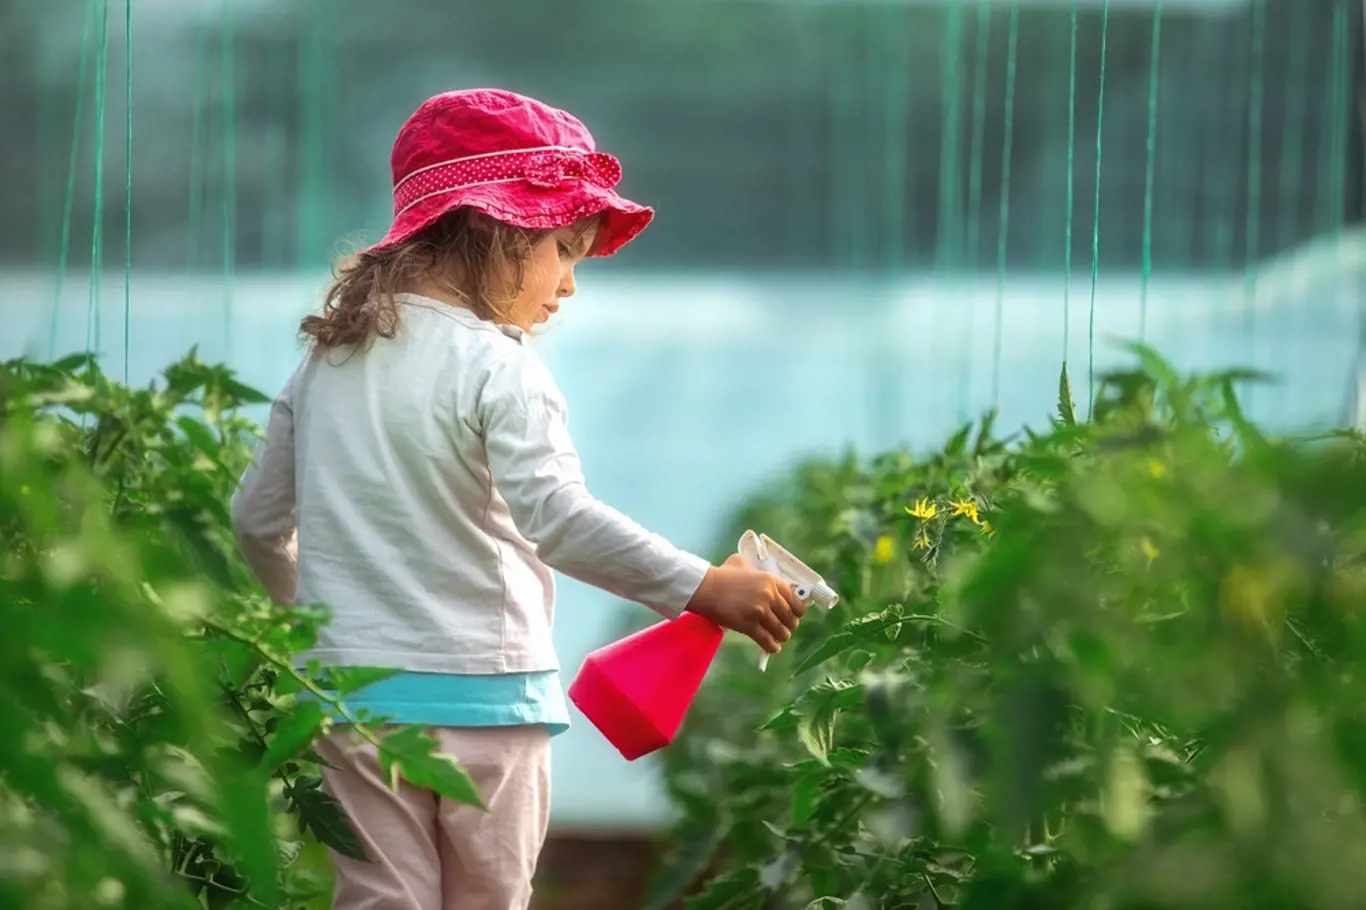 Pěstování rajčat není složité - stejně jako každá práce vyžaduje zájem a péči